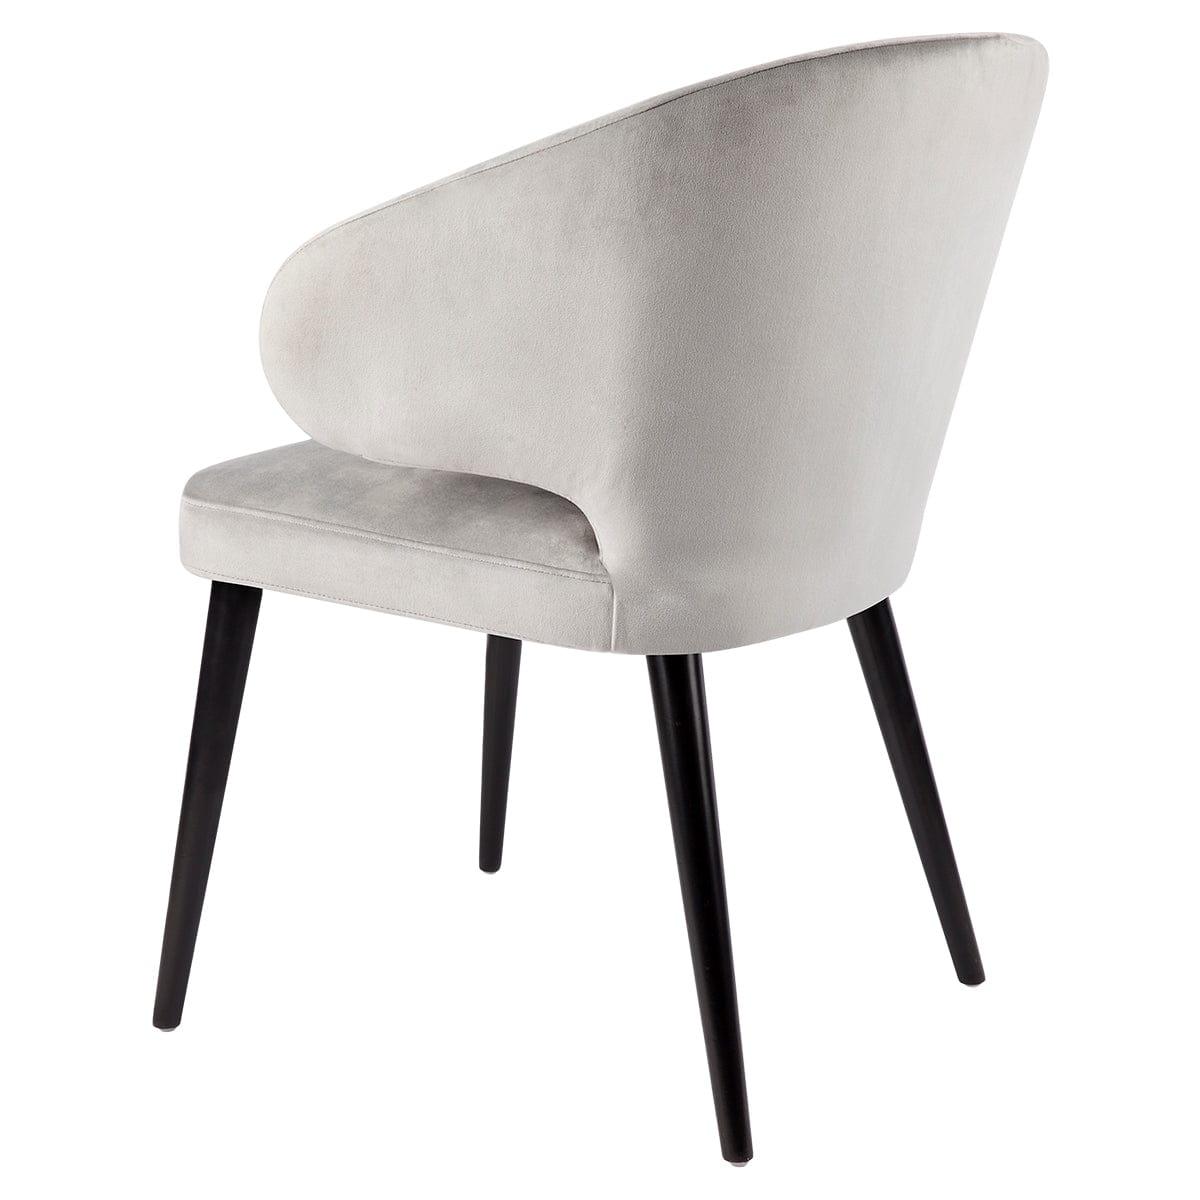 House Journey Harlow Black Dining Chair - Grey Velvet